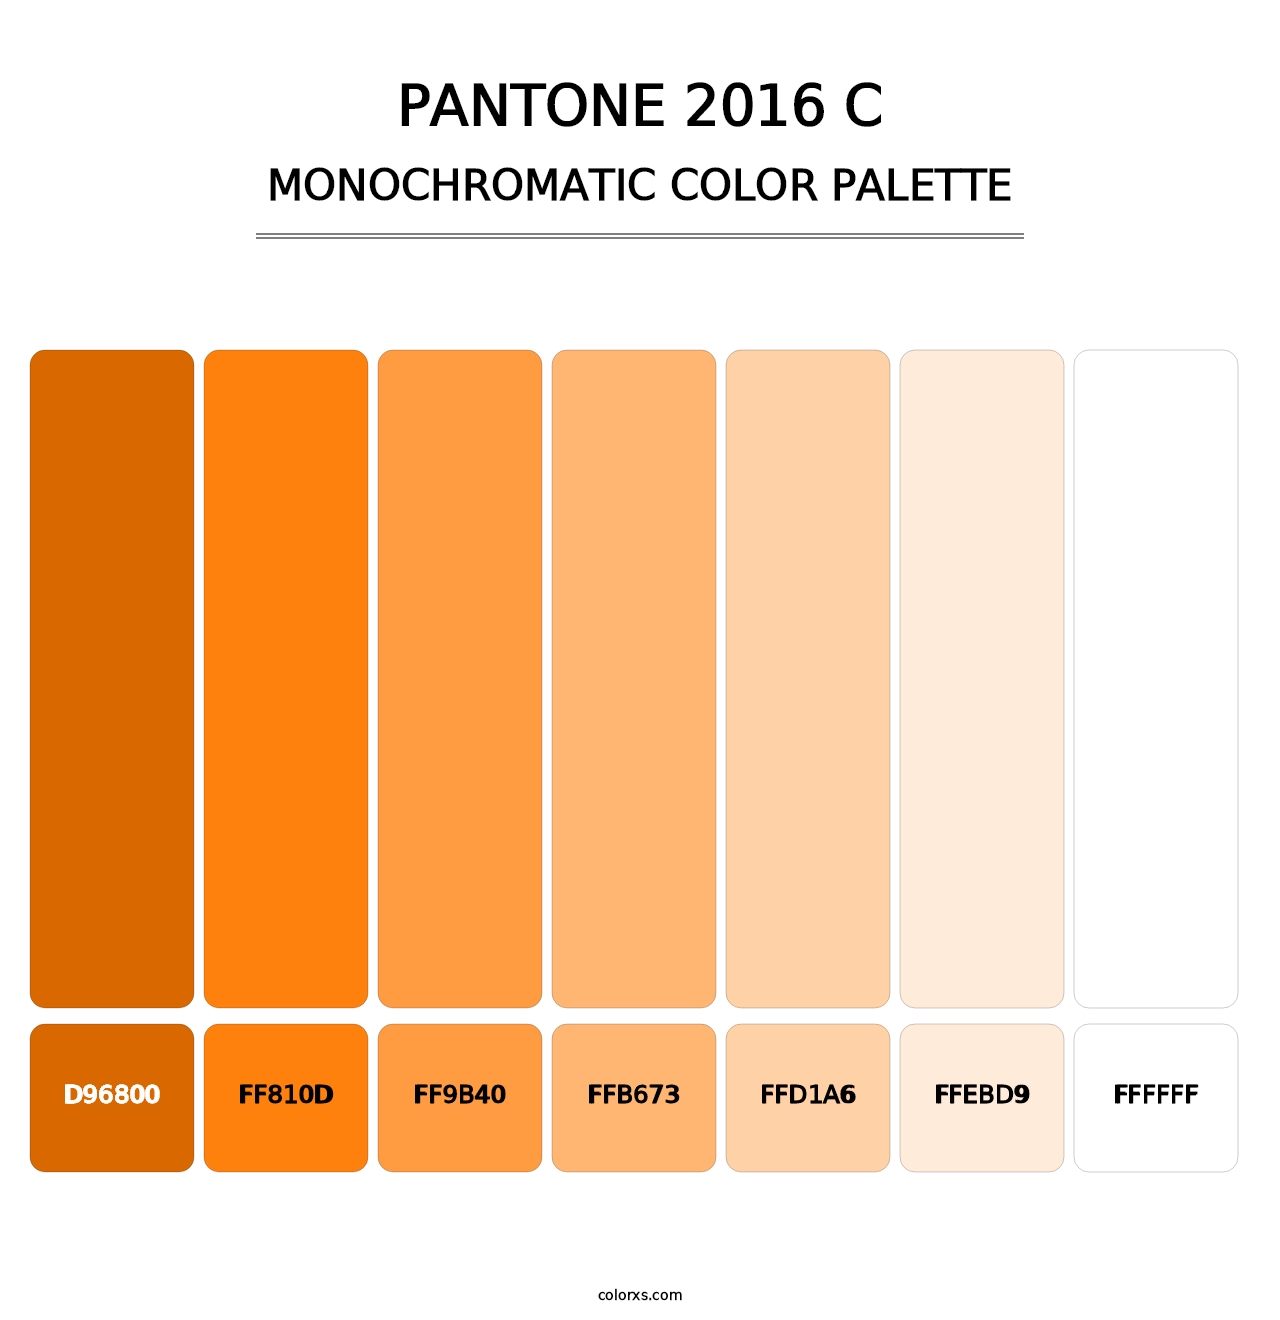 PANTONE 2016 C - Monochromatic Color Palette